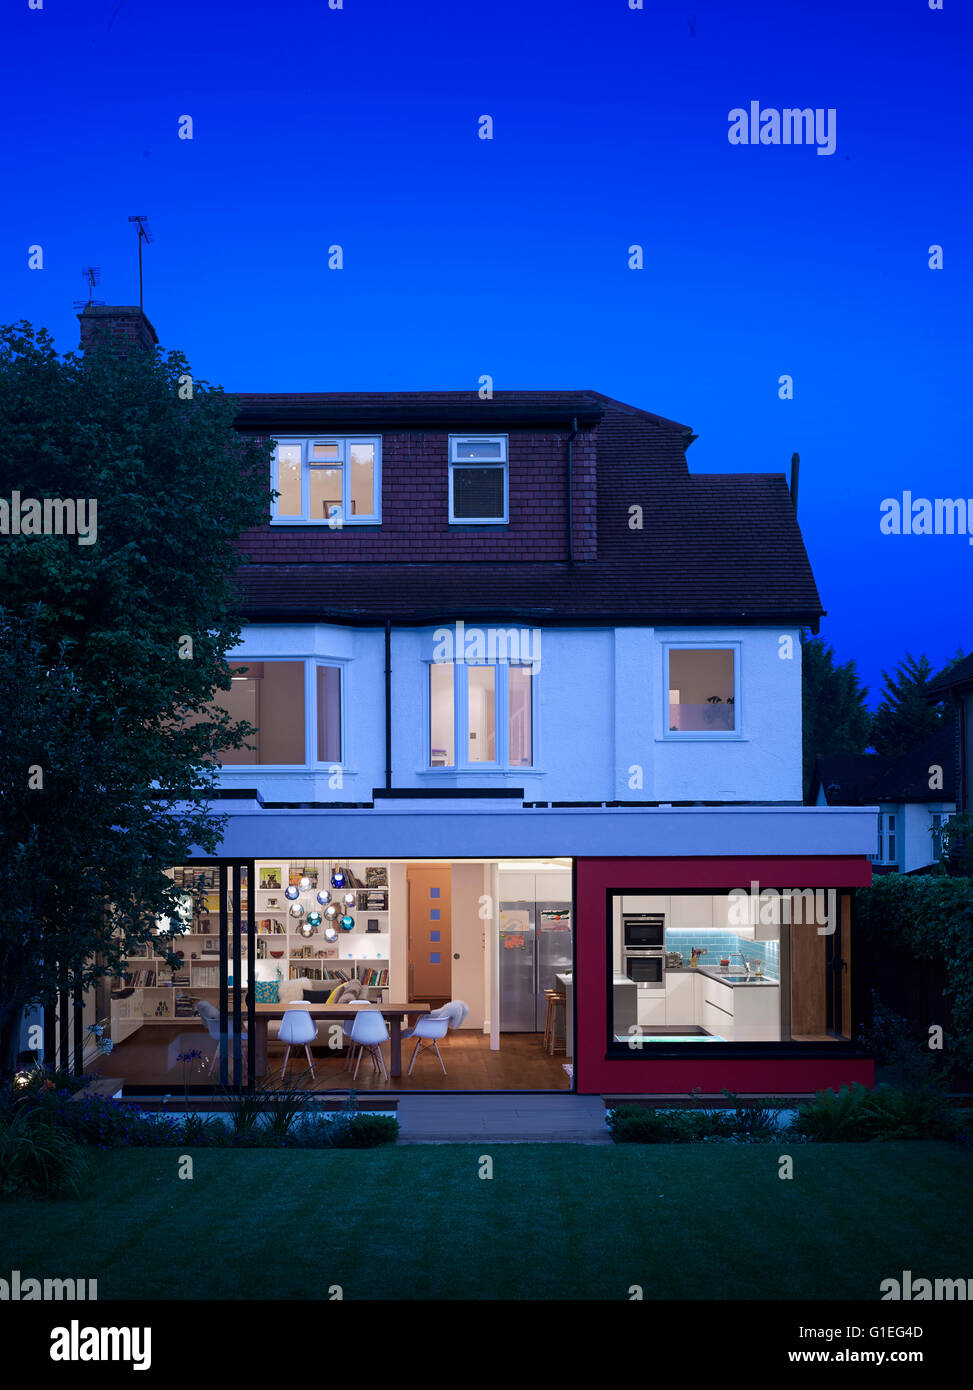 Eingeschossige Erweiterung, Mincheon Road, London. Blick auf offenen Wohnraum und Küche durch Glasschiebetüren an der Außenwand des Hauses. Stockfoto